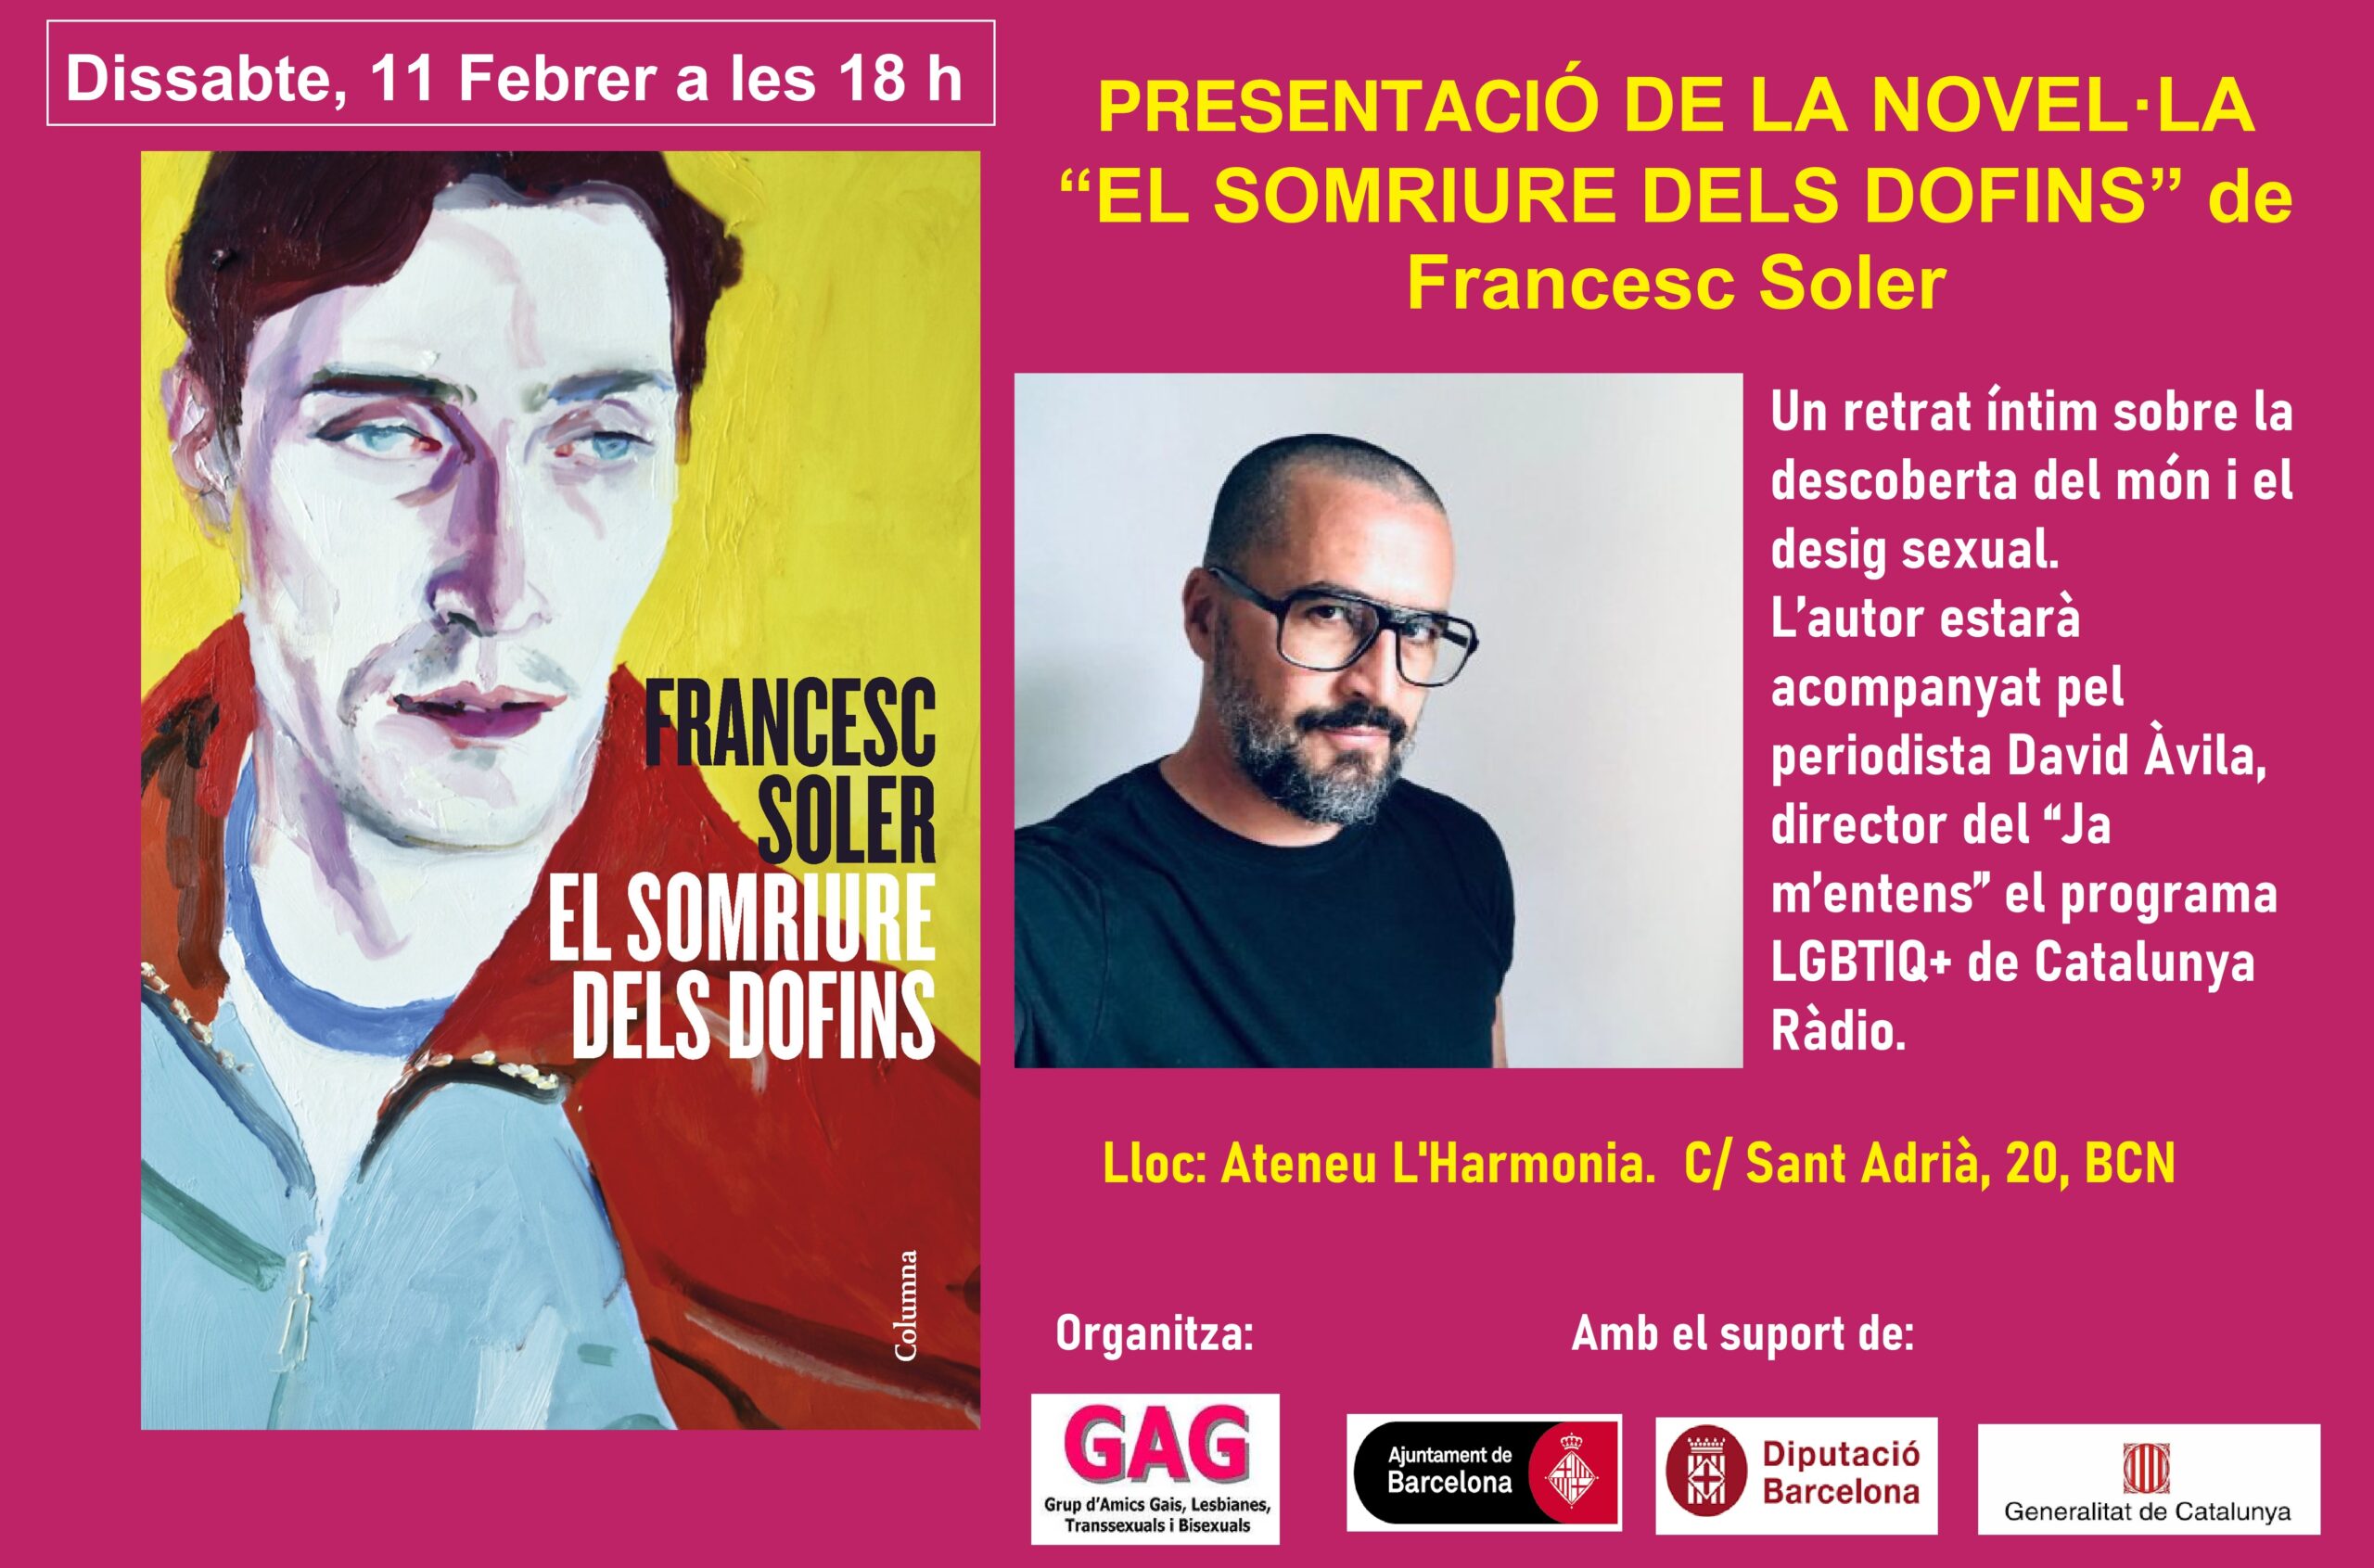 Dissabte, 11 de Febrer a les 18h: Presentació de la nova novel·la de Francesc Soler